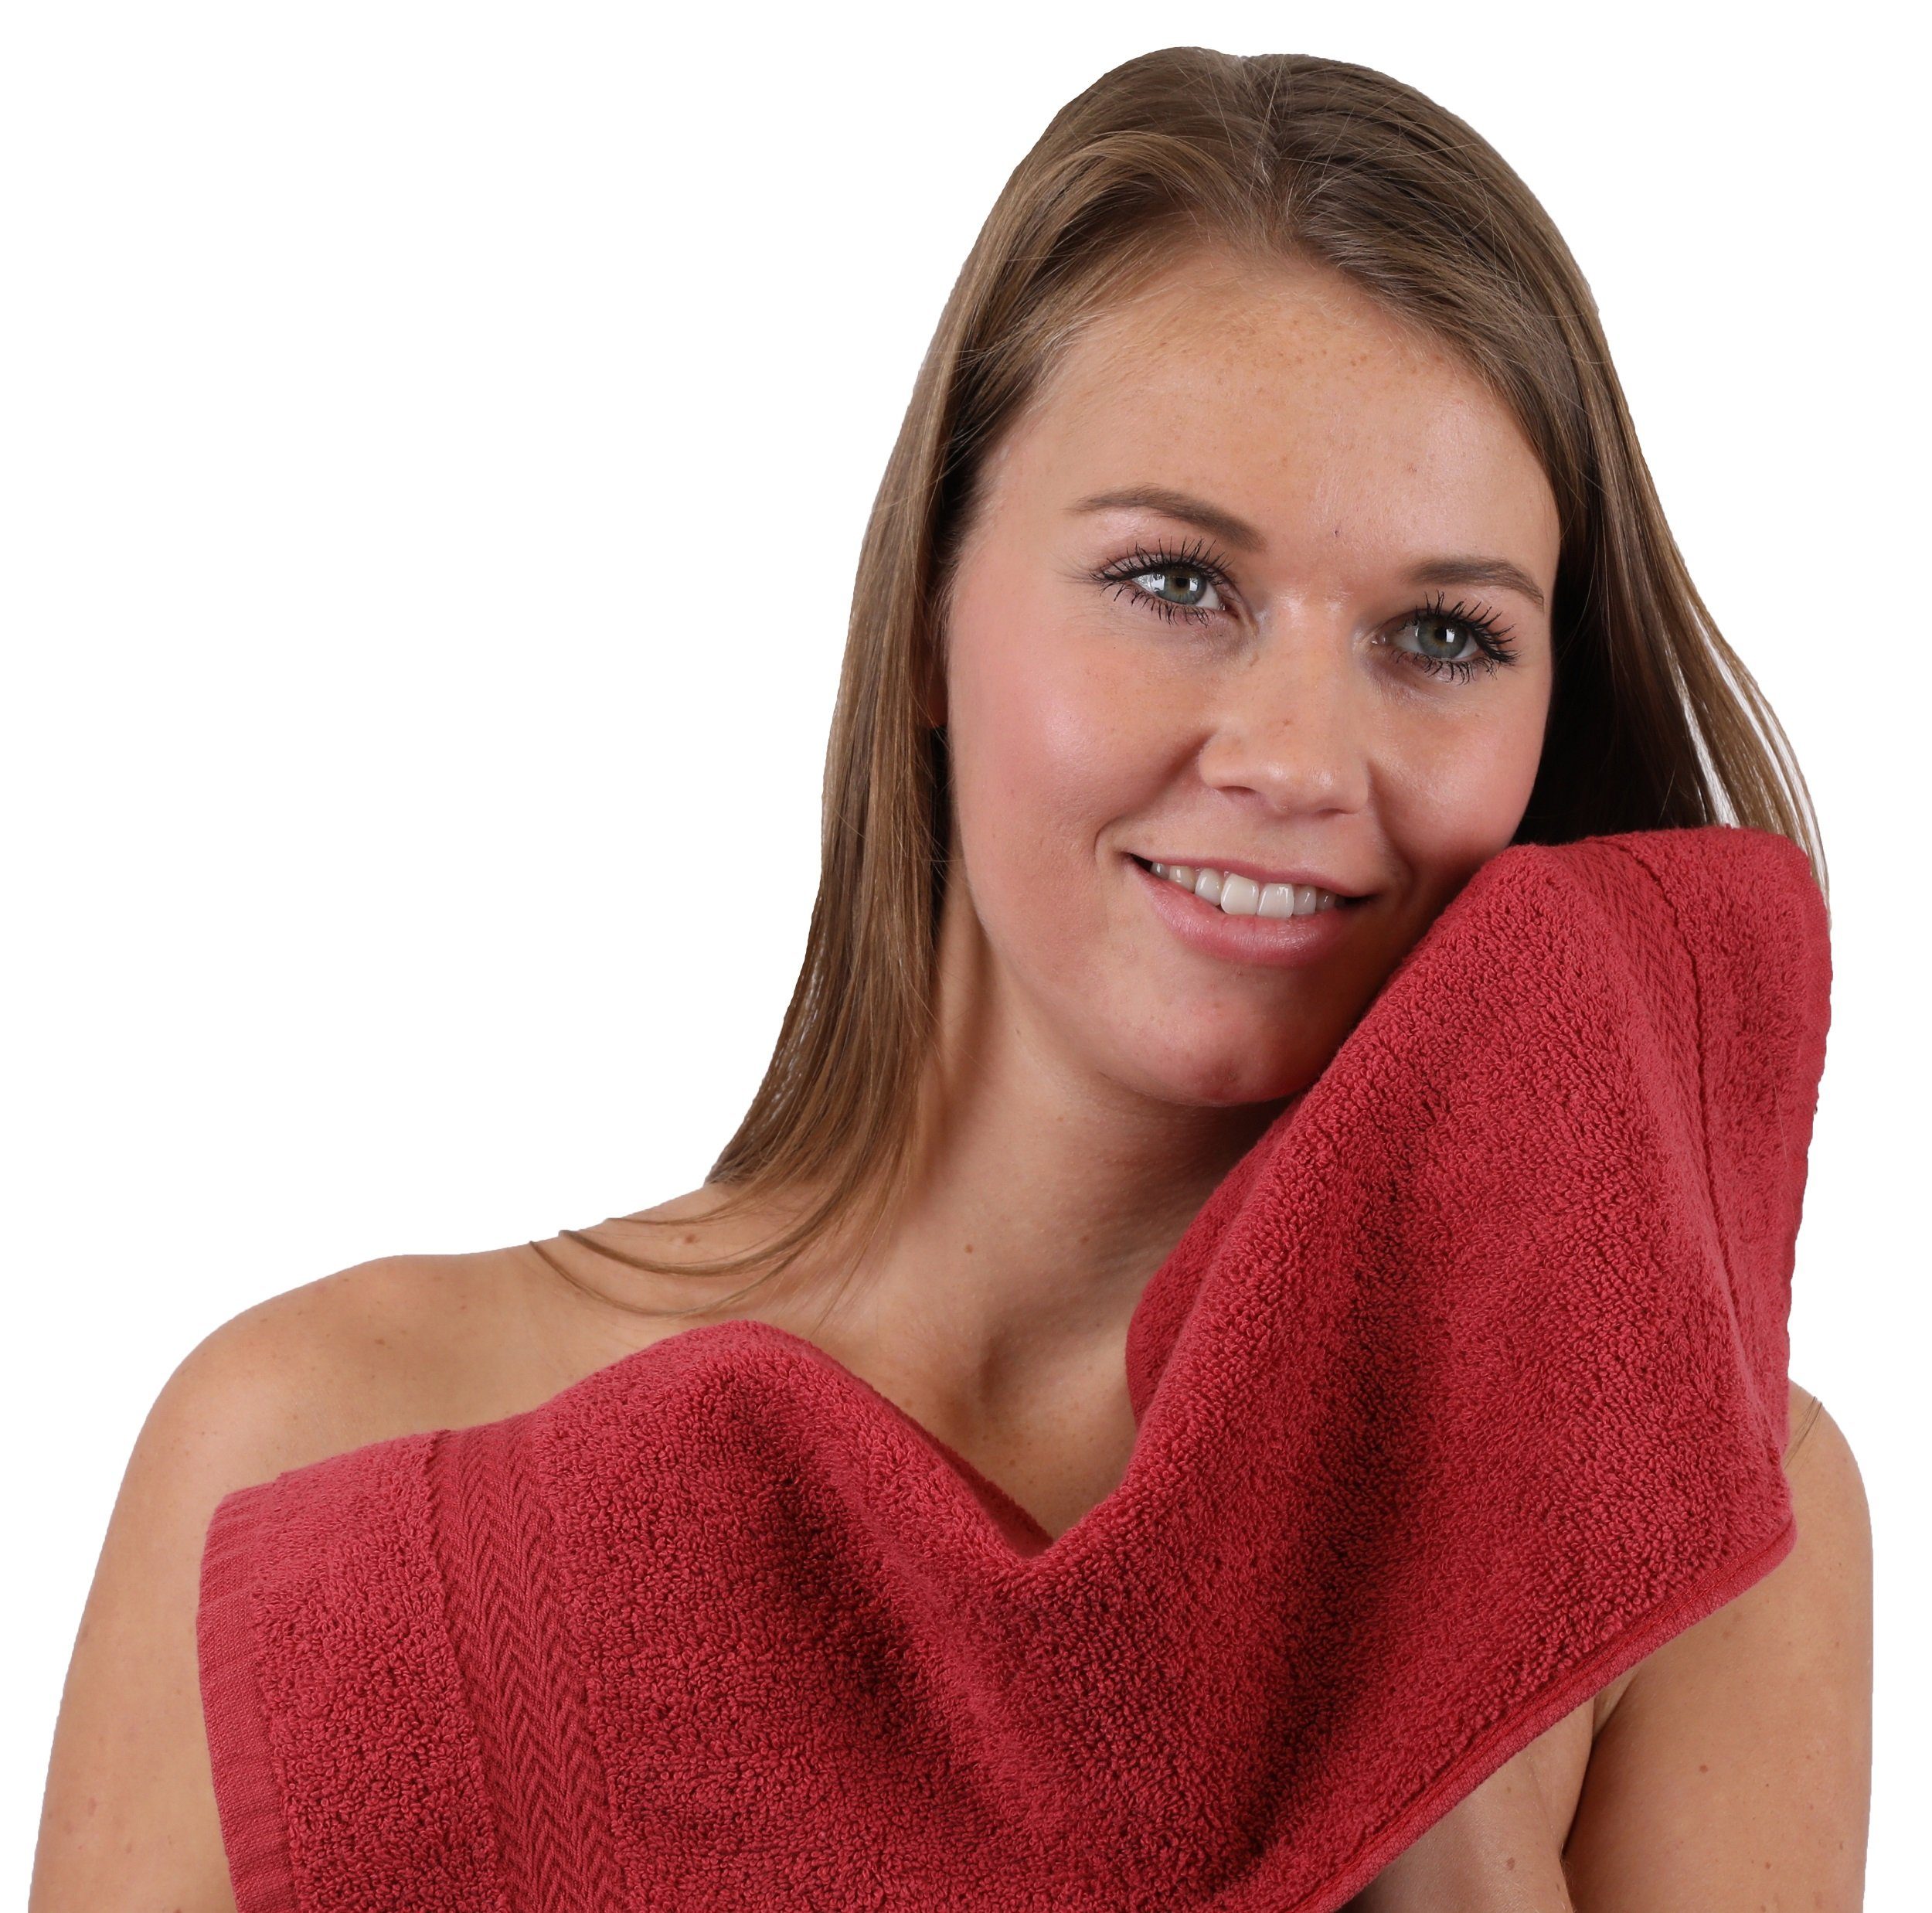 Betz Handtuch Set 10-TLG. Baumwolle Handtuch-Set Classic dunkelrot, 100% Farbe nussbraun und